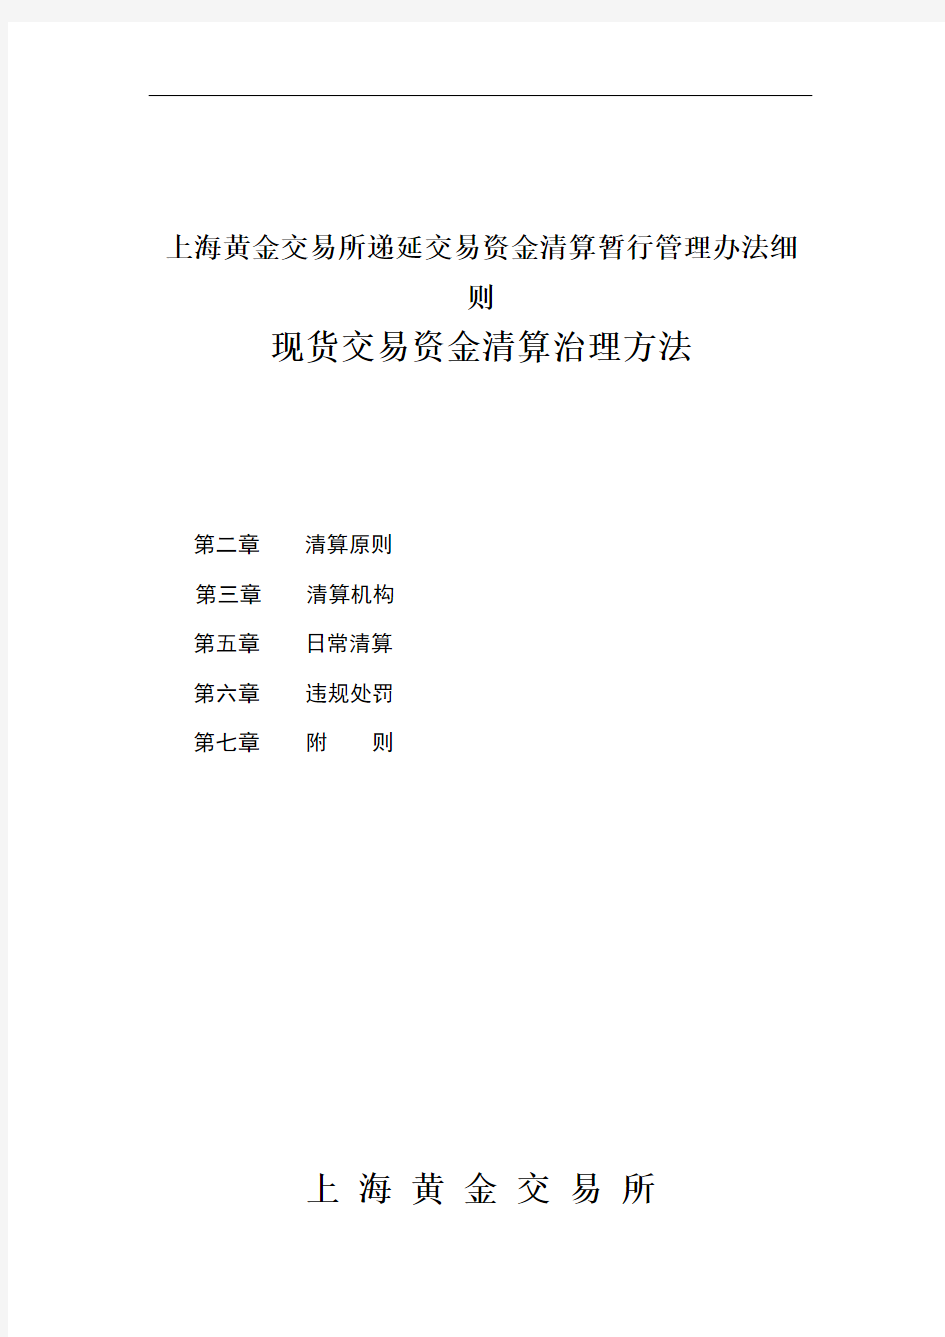 上海黄金交易所递延交易资金清算暂行管理办法细则